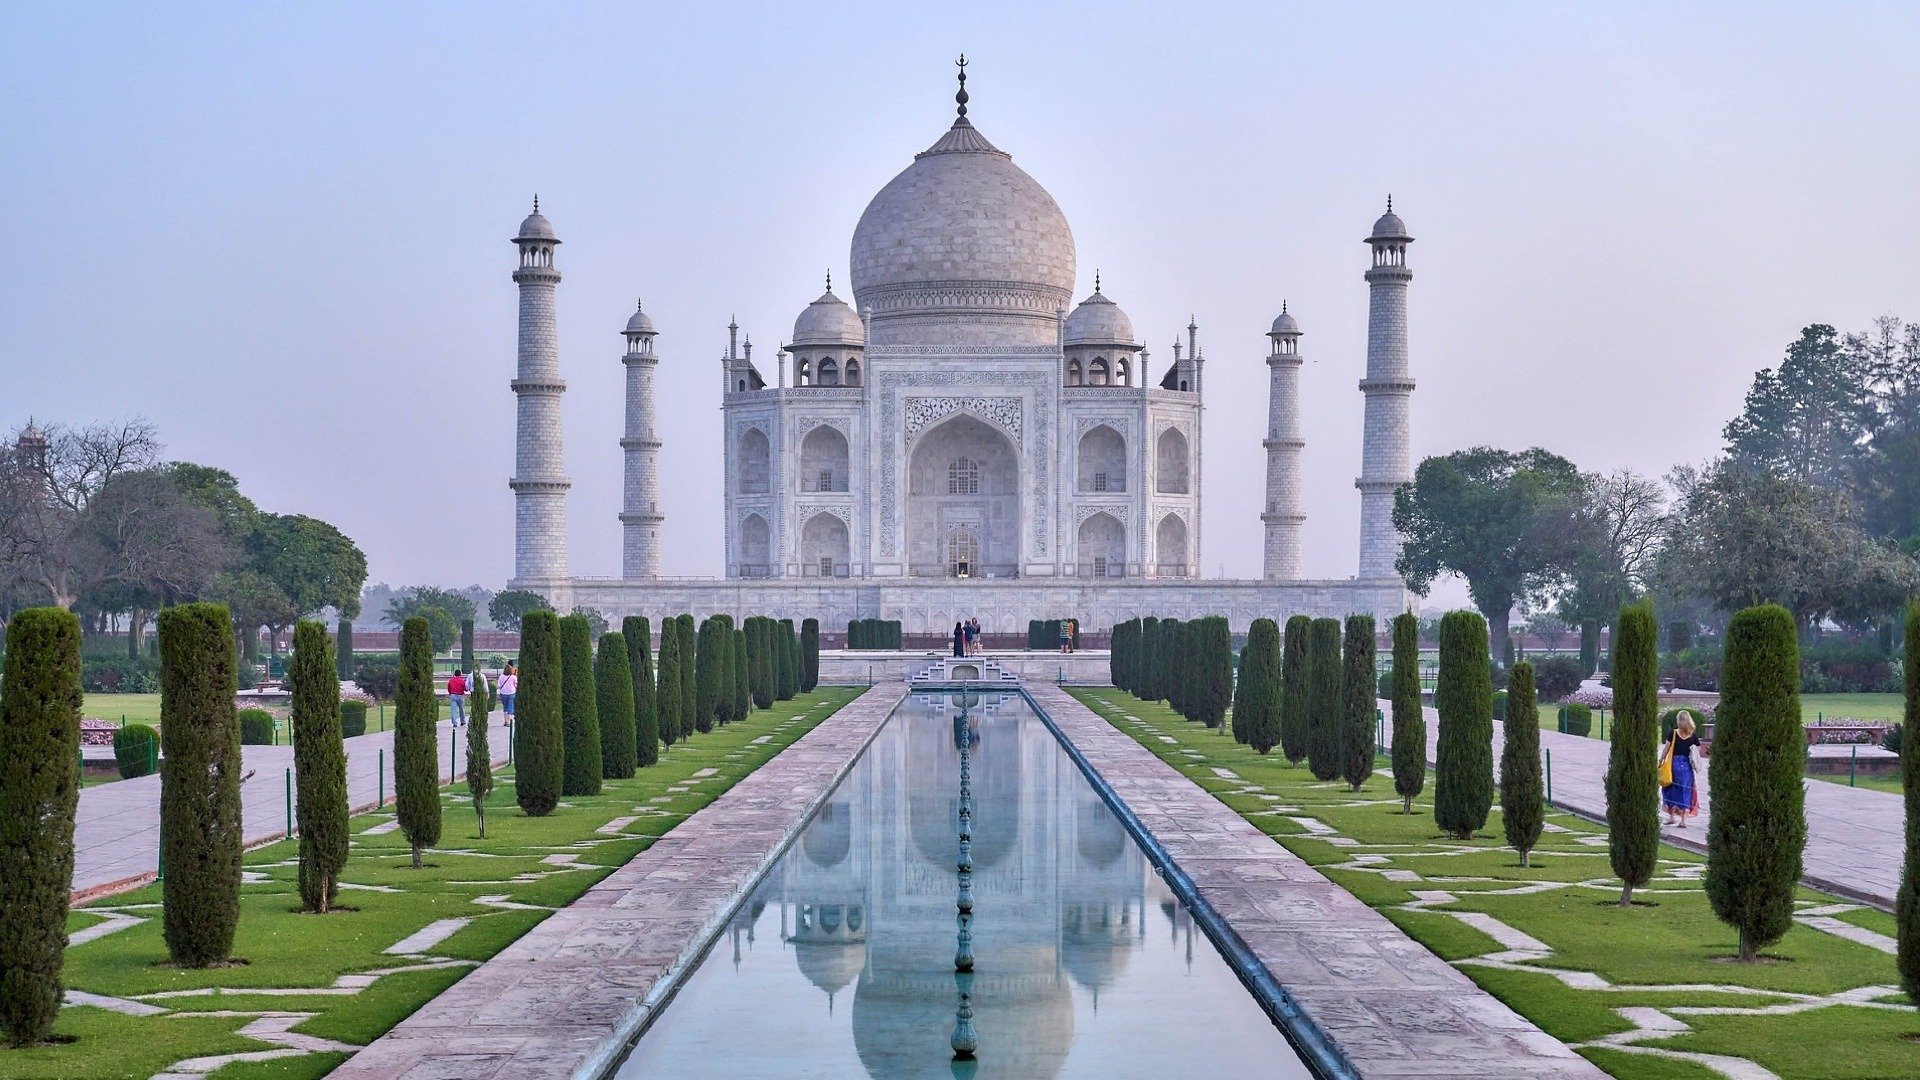 4. Taj Mahal